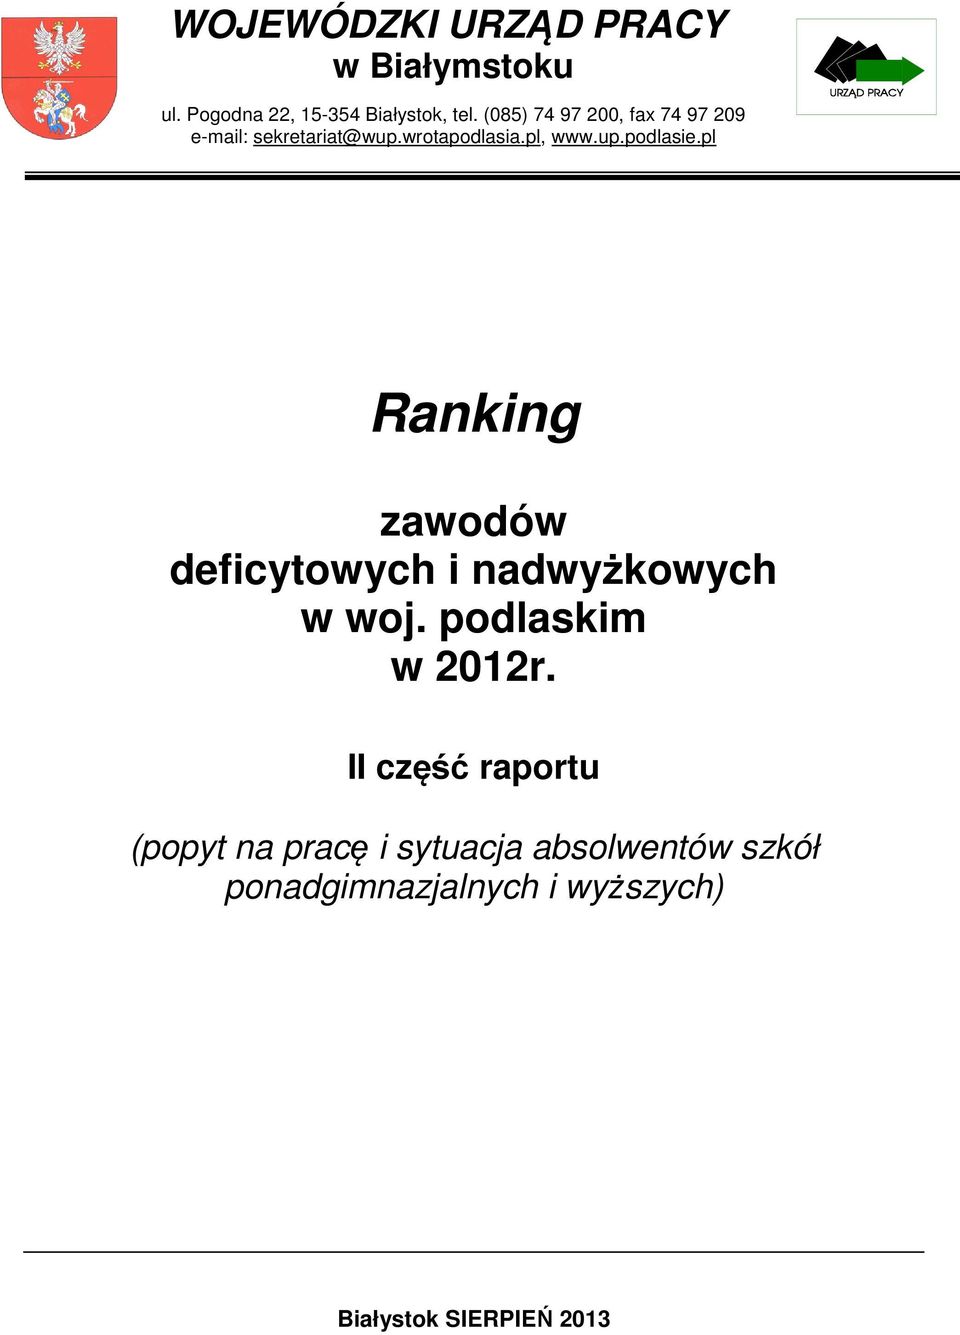 pl Ranking zawodów deficytowych i nadwyżkowych w woj. podlaskim w 2012r.